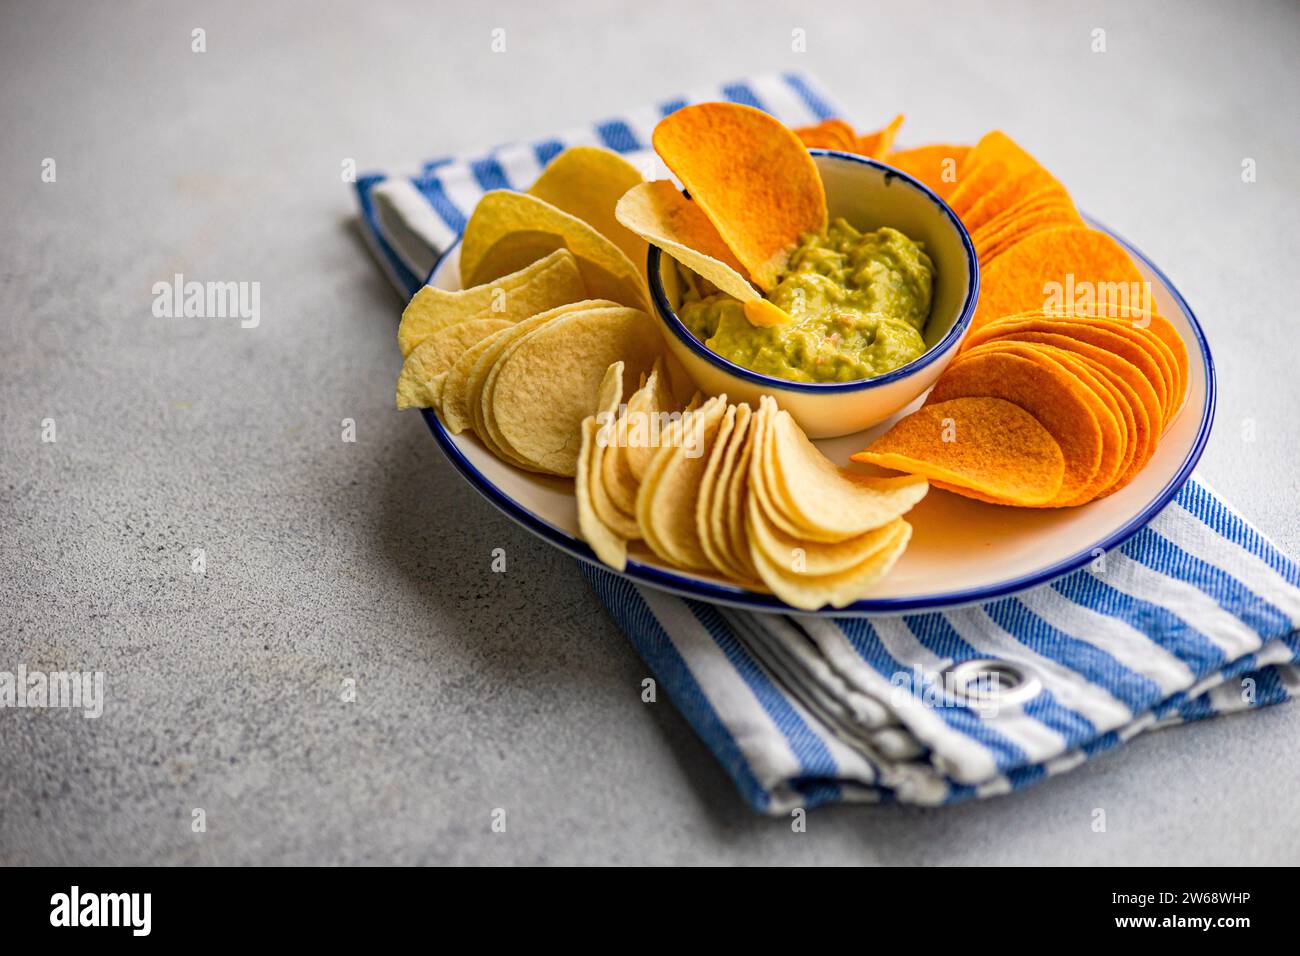 Fokusplatte mit verschiedenen Chips, einschließlich Kartoffeln, Paprika und Käse, serviert mit einer Schüssel mit frischer Avocado-Guacamole auf einer gestreiften Serviette Stockfoto